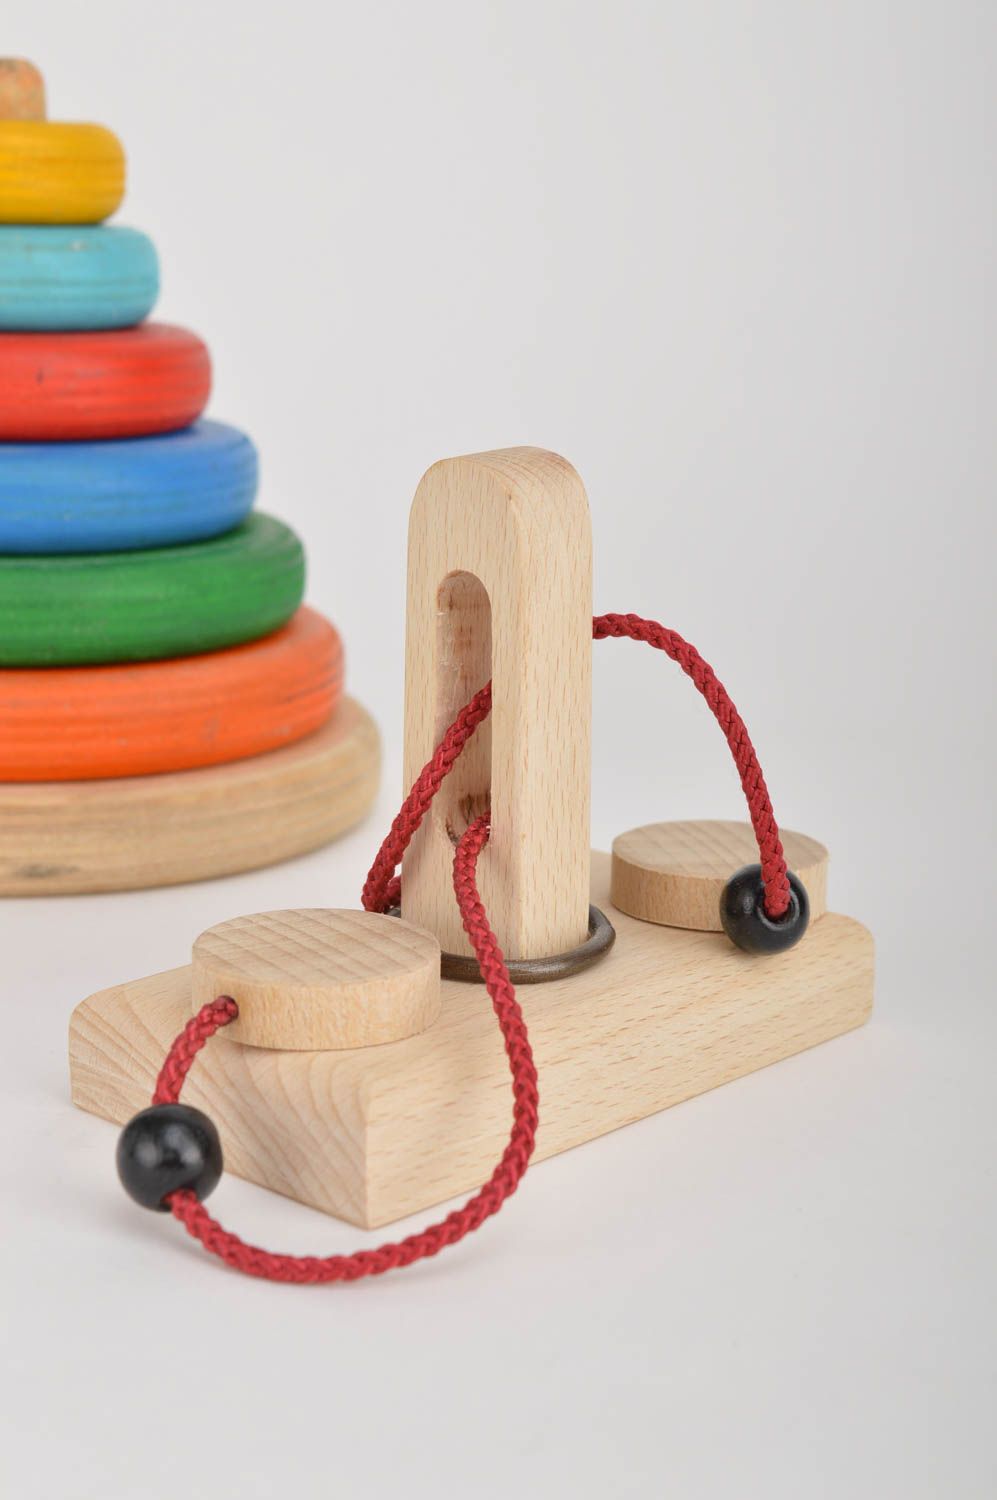 Игрушка ручной работы кольцо-головоломка игрушка из дерева от 3 лет развивающая фото 1